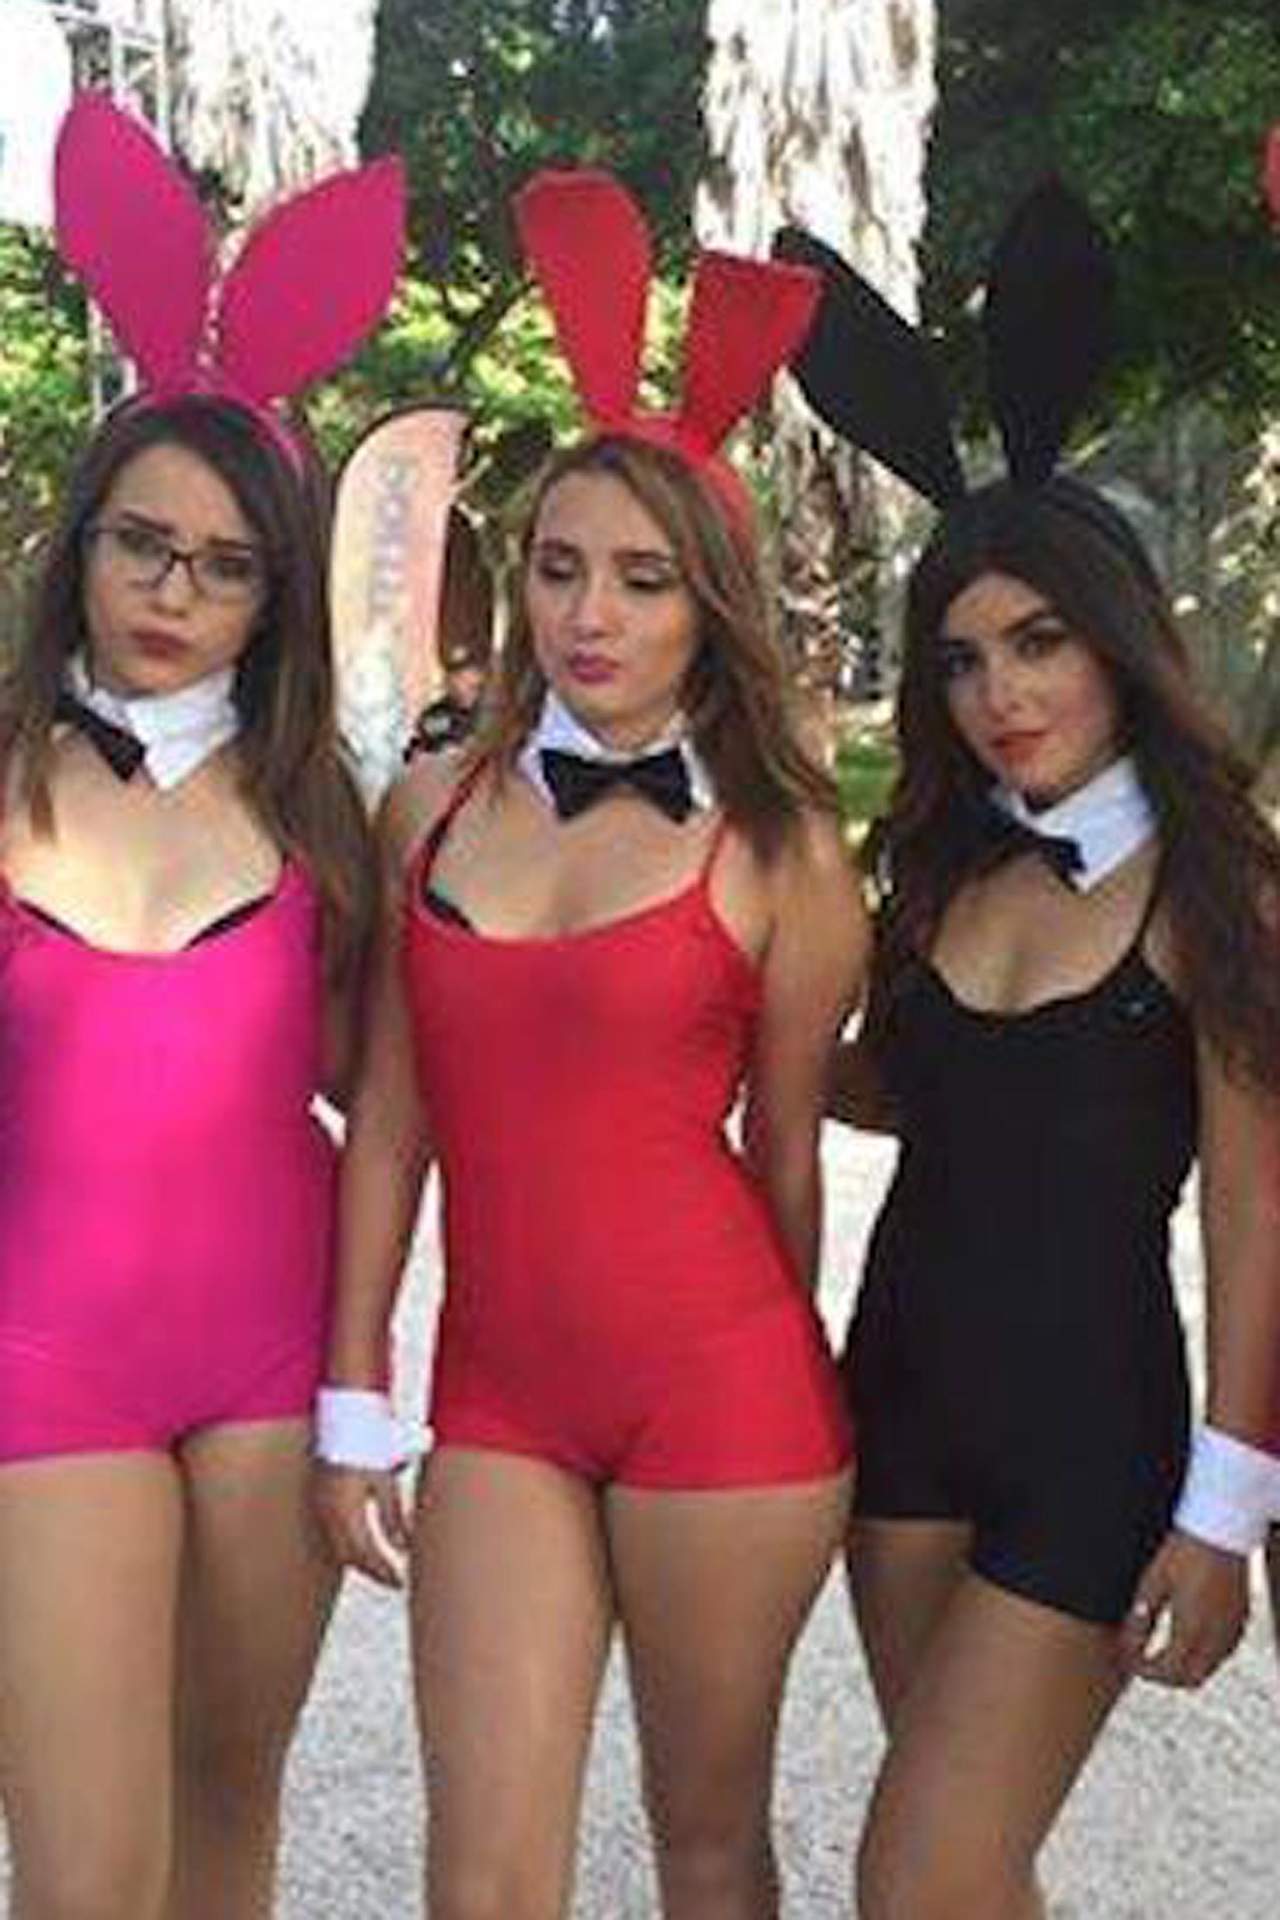 Indagará INM detención de extranjeros en fiesta de 'Playboy'